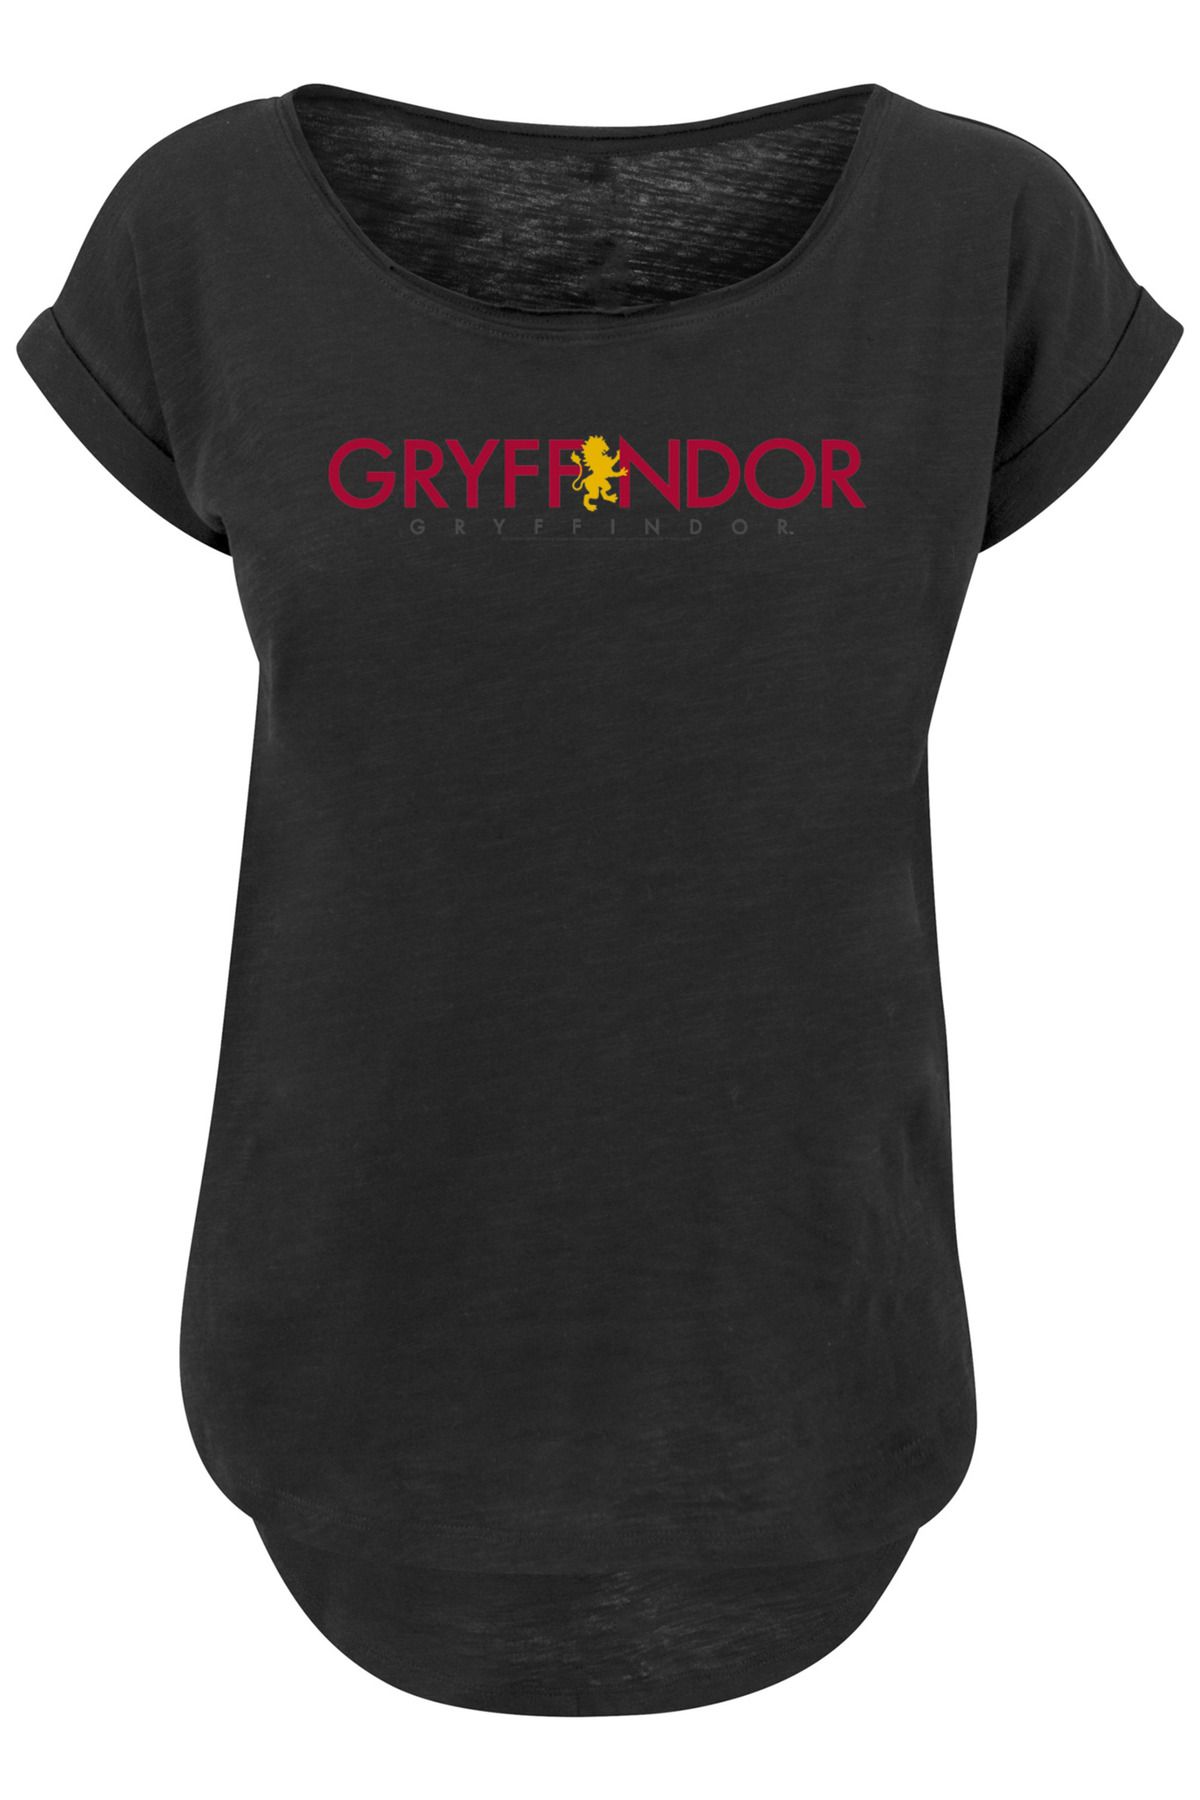 Damen F4NT4STIC langem Harry Trendyol Gryffindor-Text - für Potter mit Damen Slub-T-Shirt für